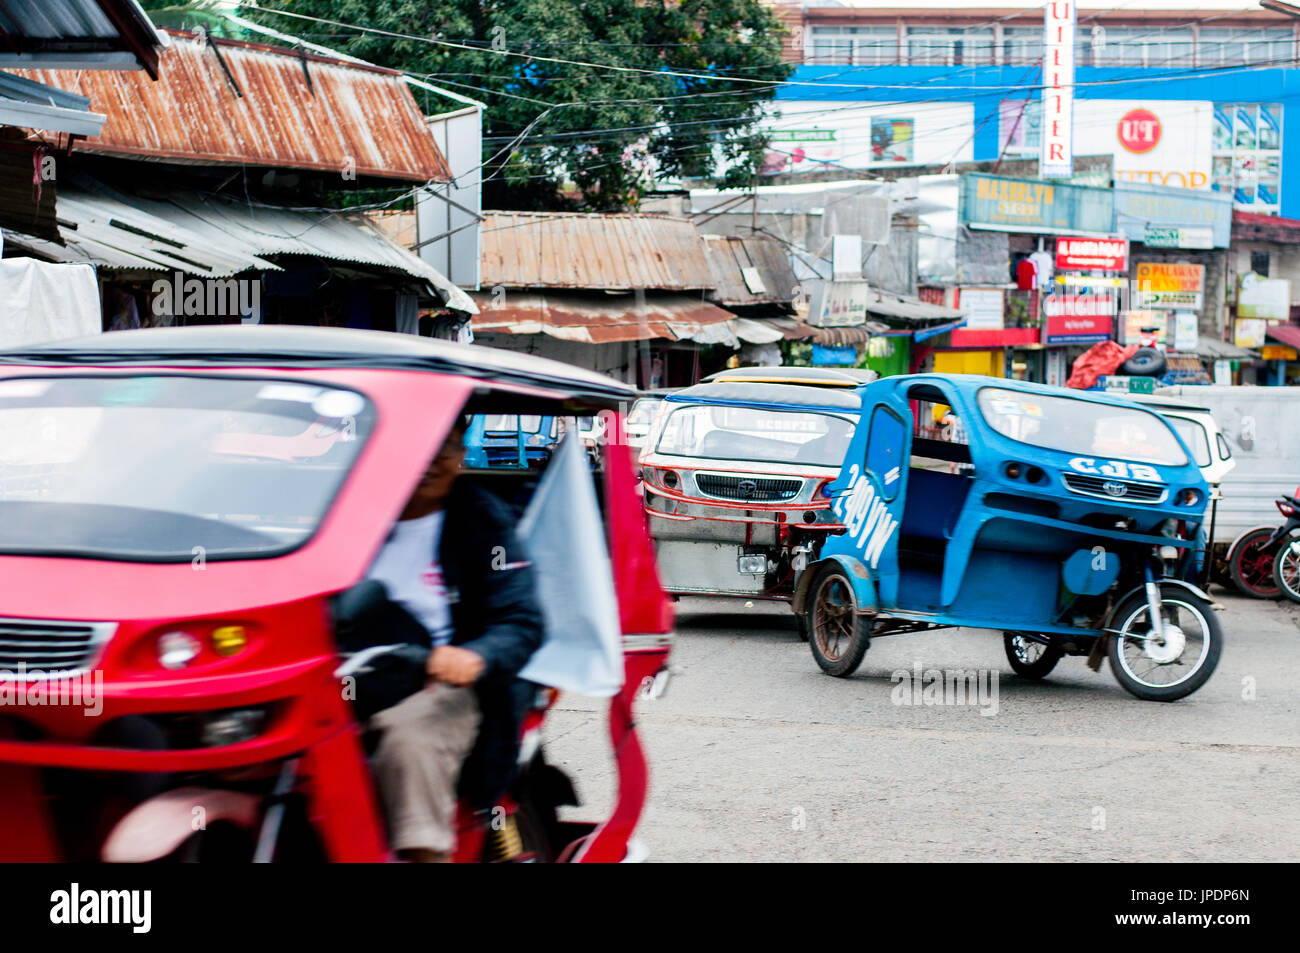 Straßenszene mit Dreirad-taxis in der Nähe von Markt, Puerto Princesa, Palawan, Philippinen Stockfoto